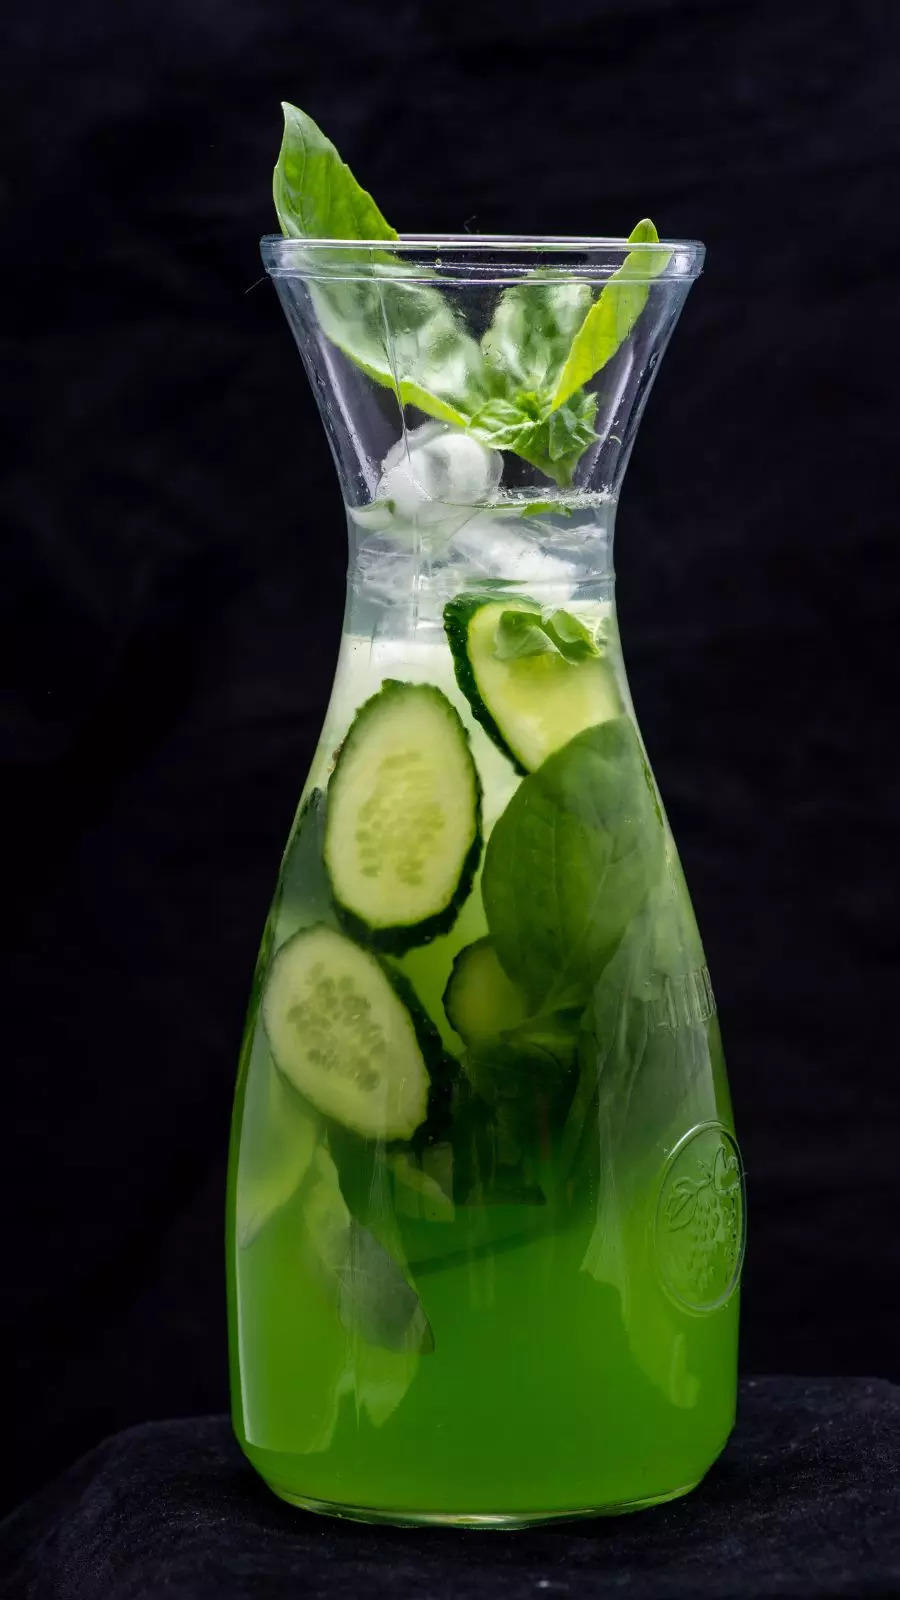 Cucumber Mint Cooler 